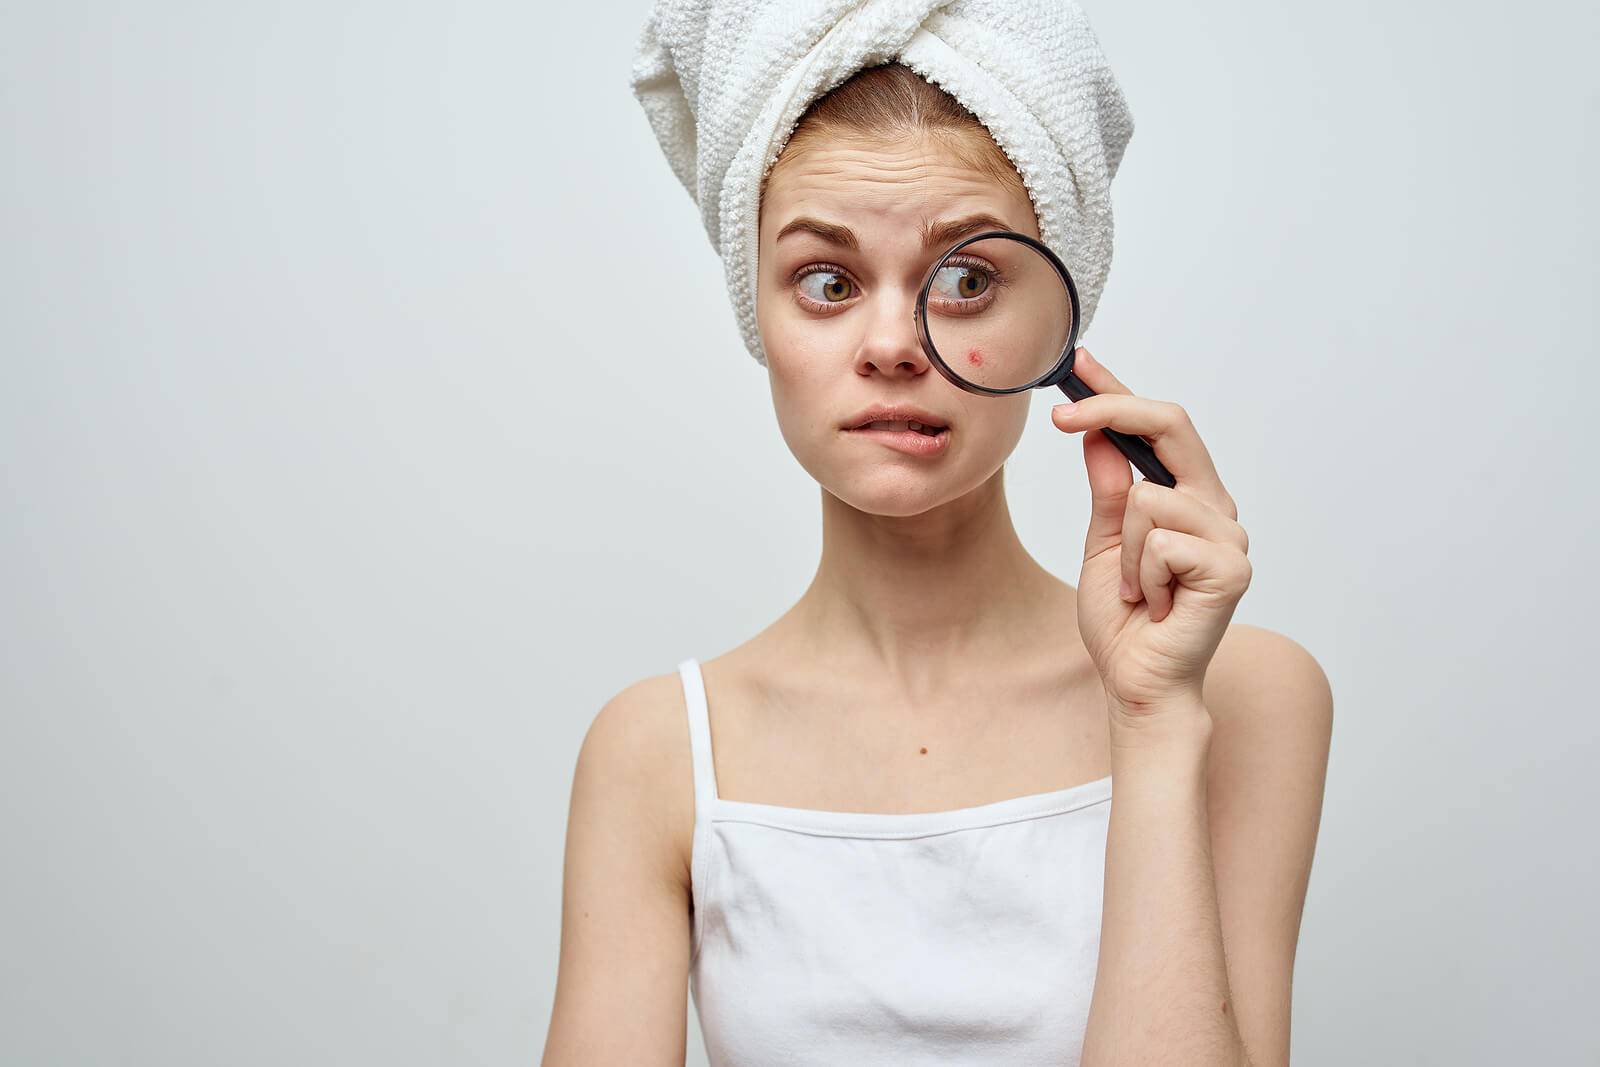 Signos y síntomas del acné